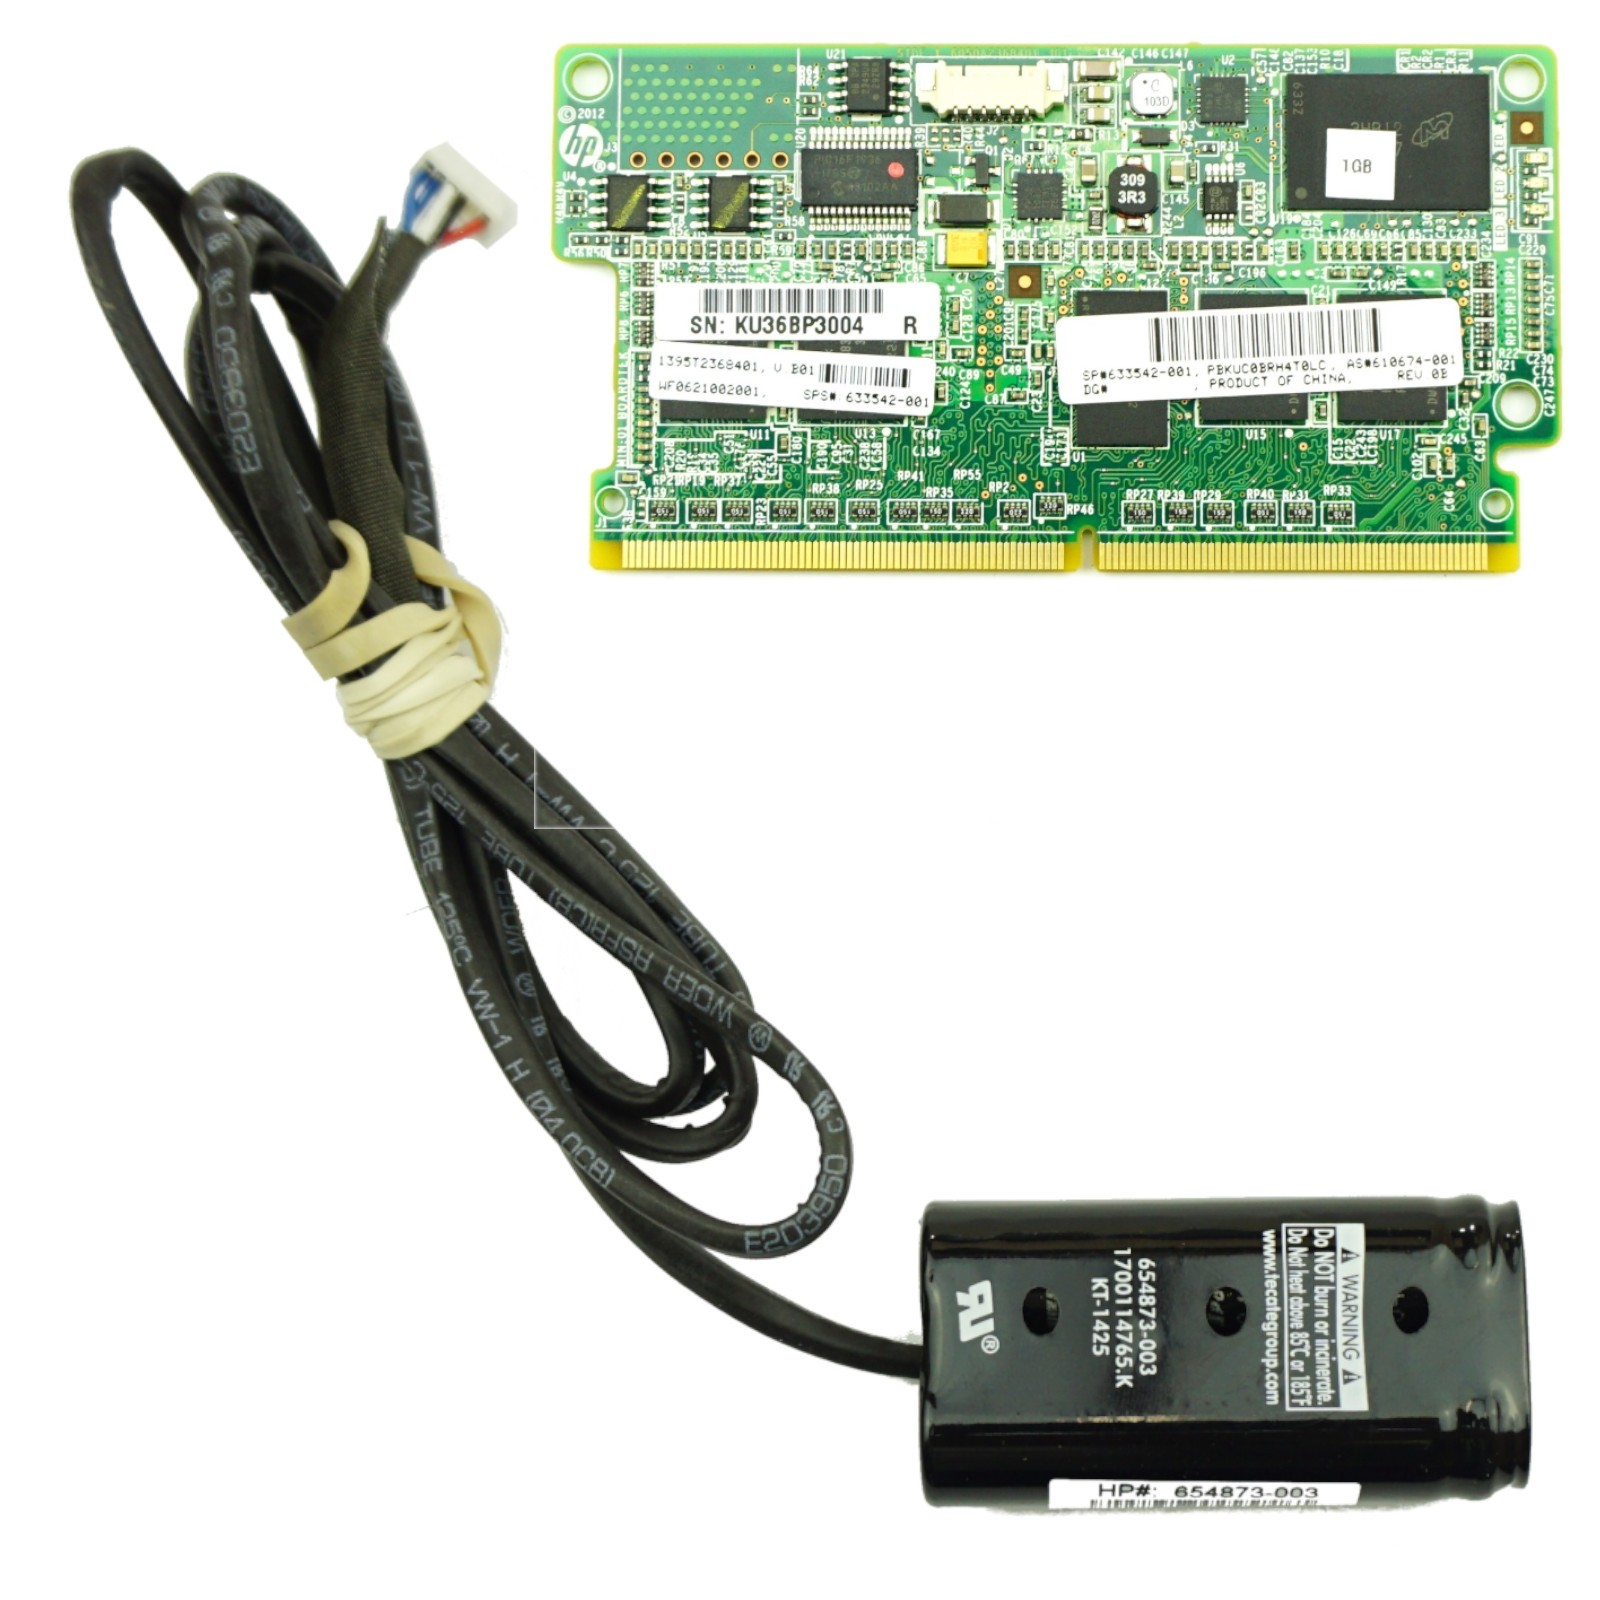 HP Smart Array P420i - 1GB FBWC for DL360p, DL380p Gen8 4*LFF Kit